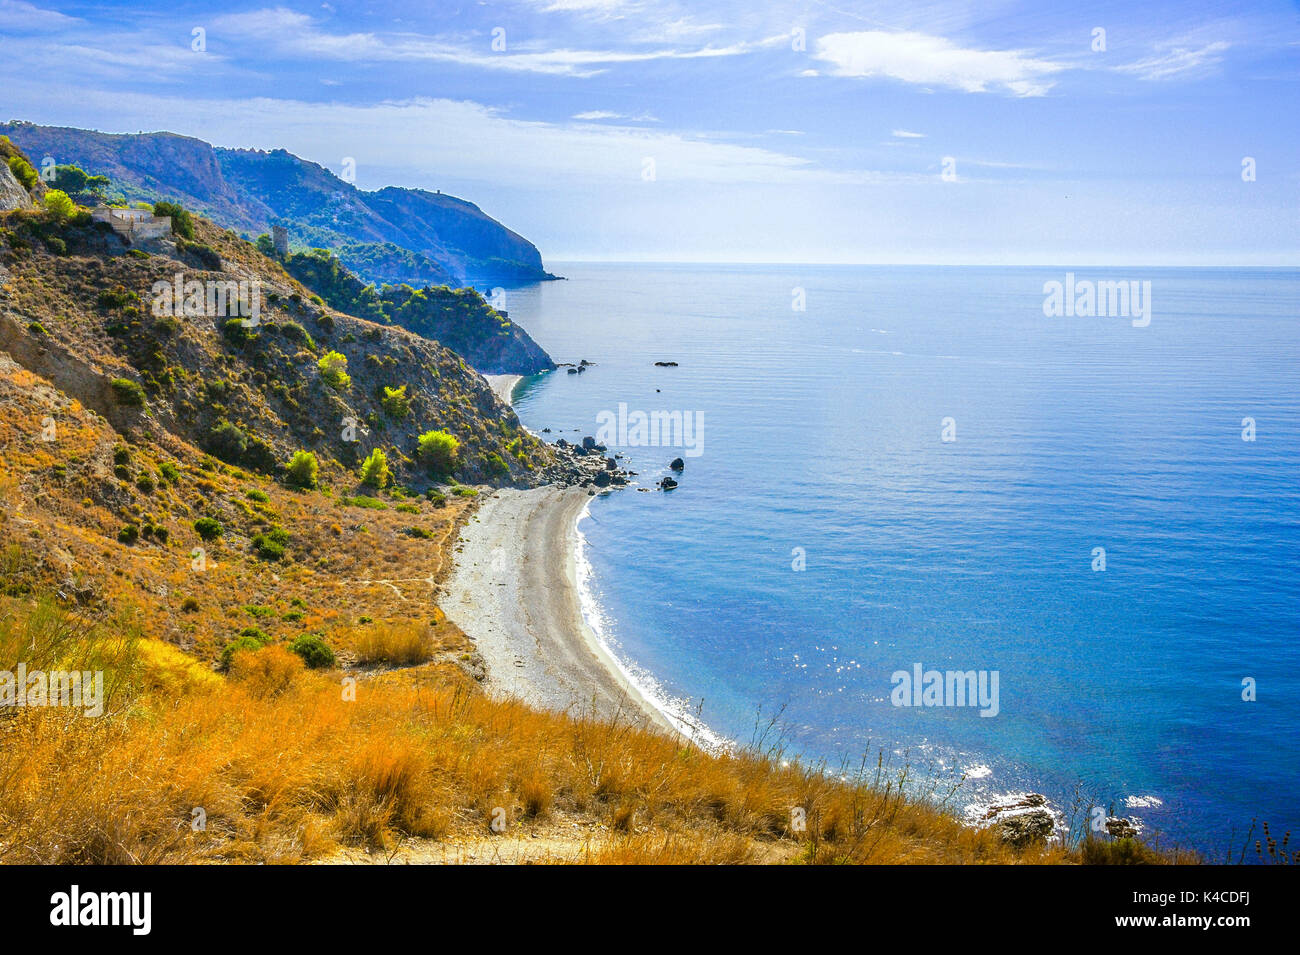 La costa rocciosa con piccole spiagge e la Torre in rovina tra Nerja e Motril, alla Costa del Sol, provincia di Mêlaga, Andalusia, Spagna Foto Stock